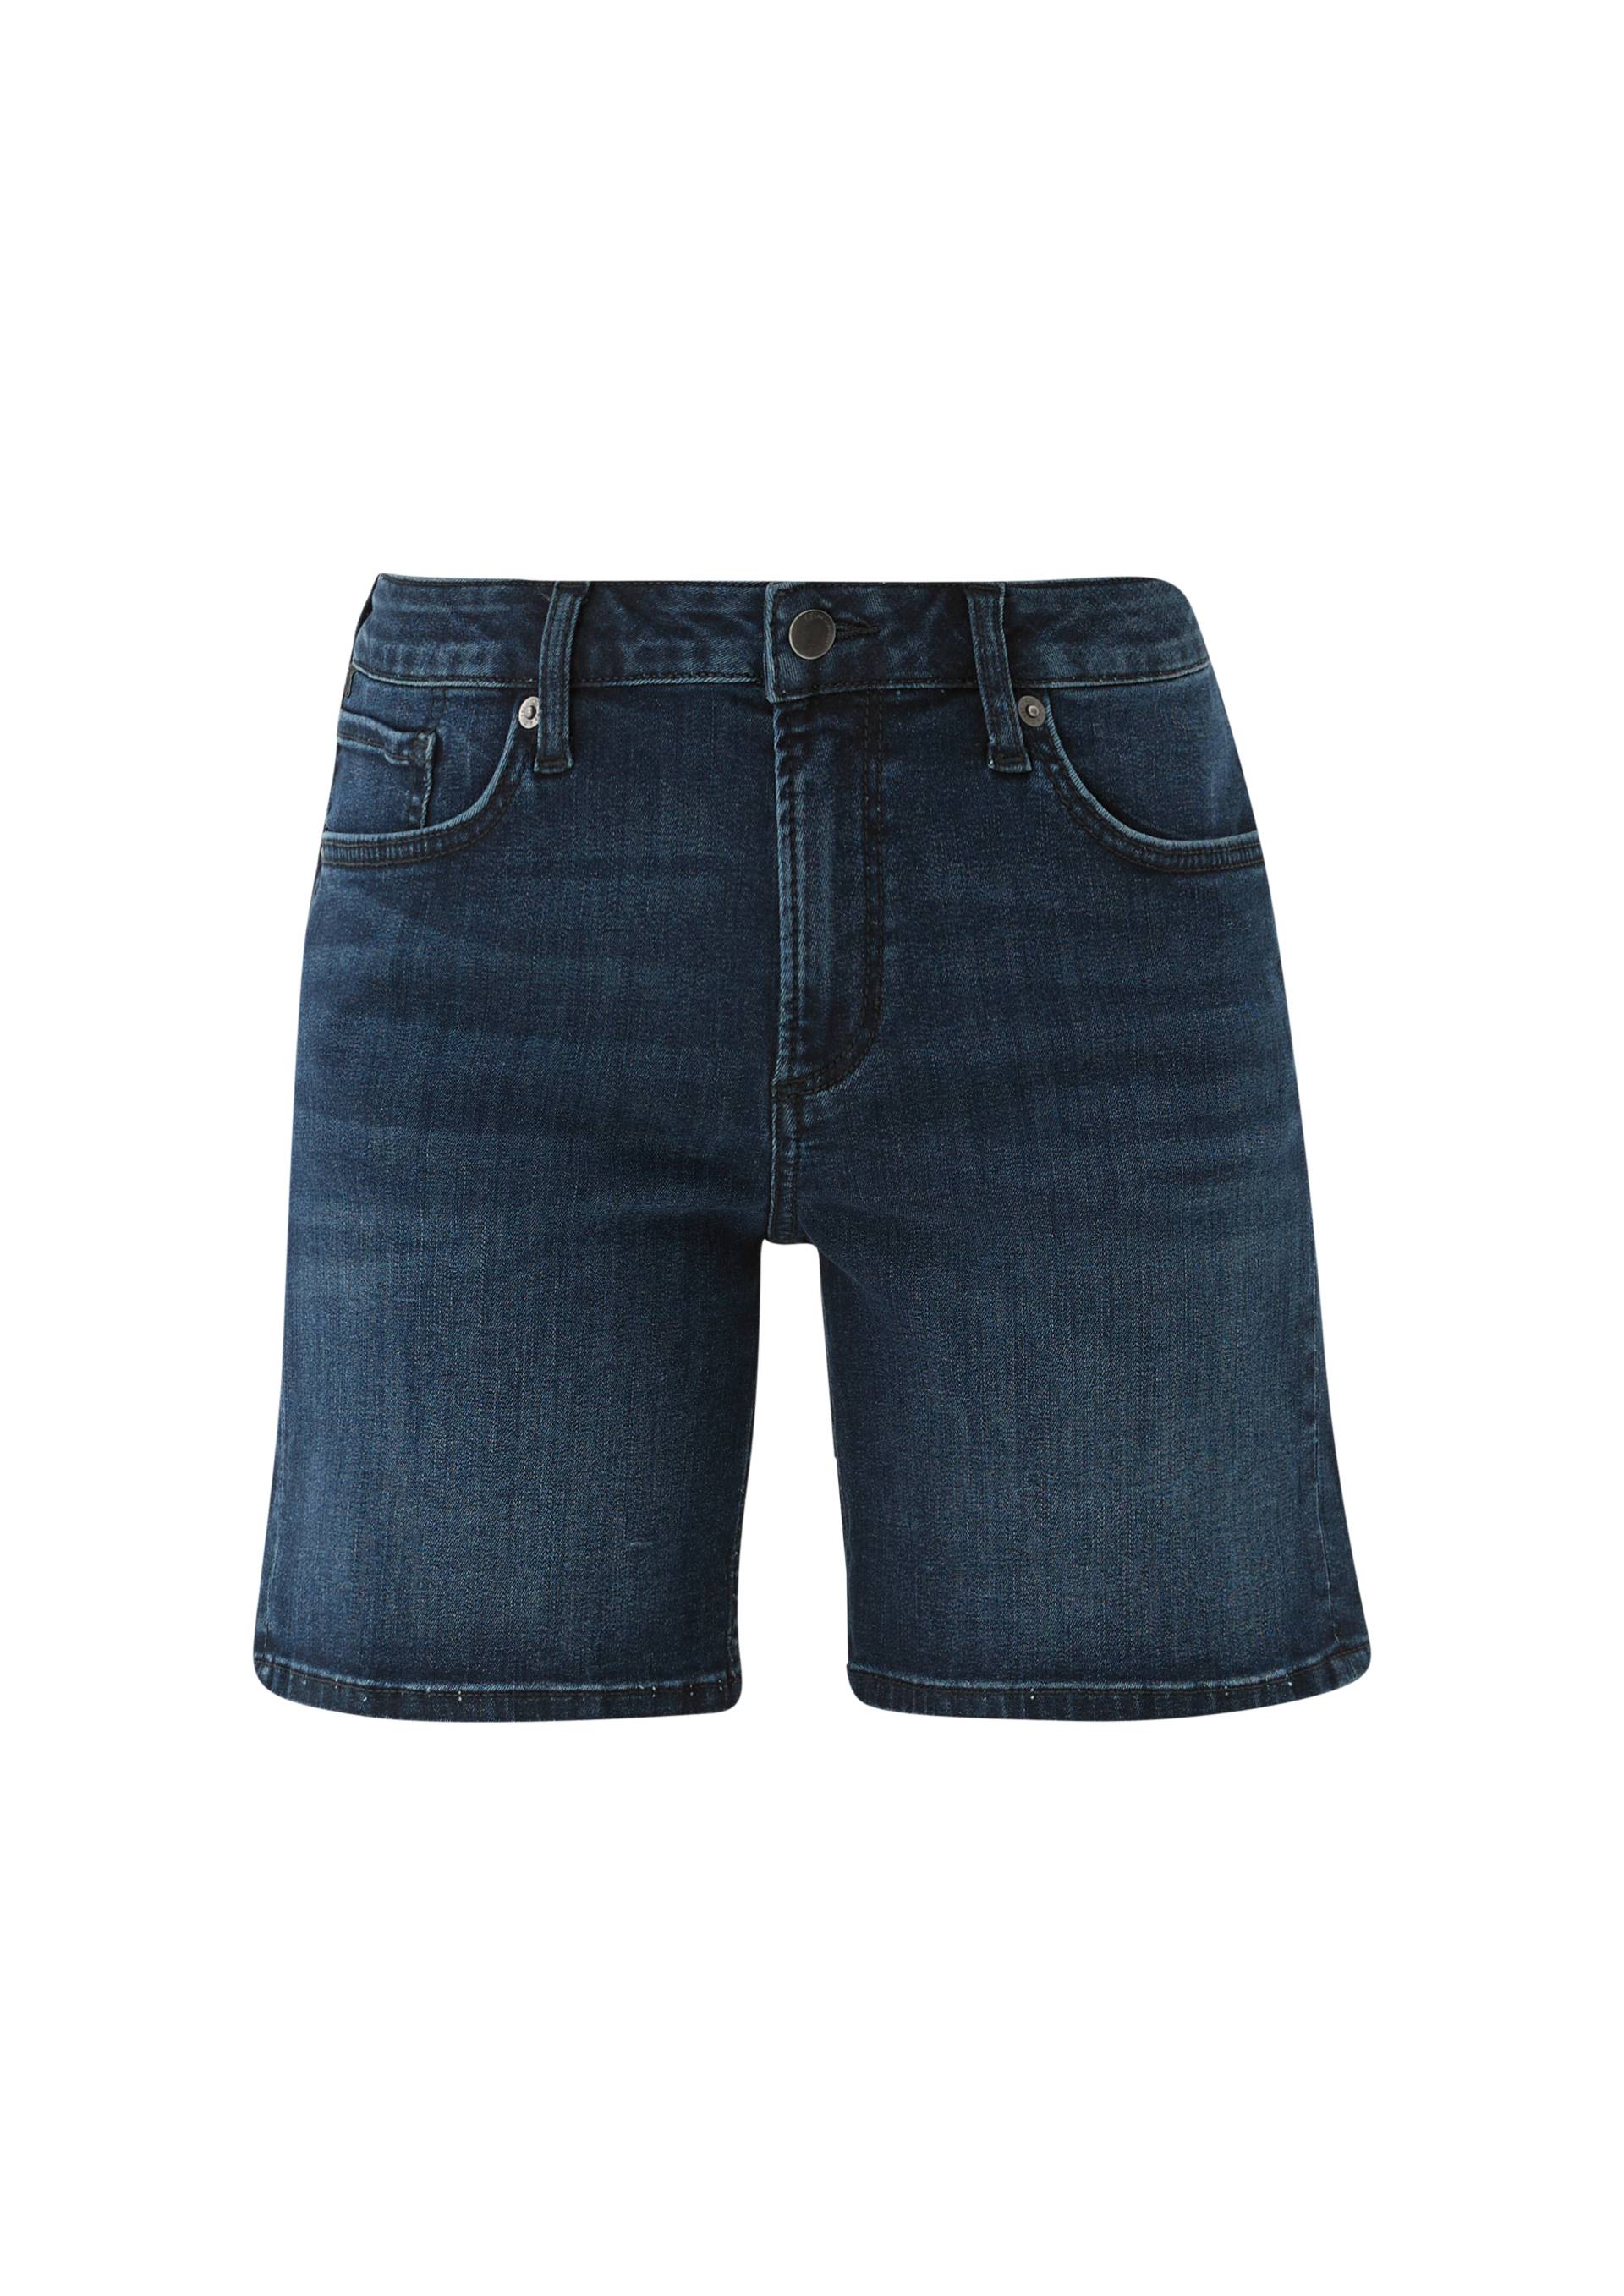 QS - Jeans-Shorts Abby / Slim Fit / Mid Rise / Slim Leg, Damen, blau von QS